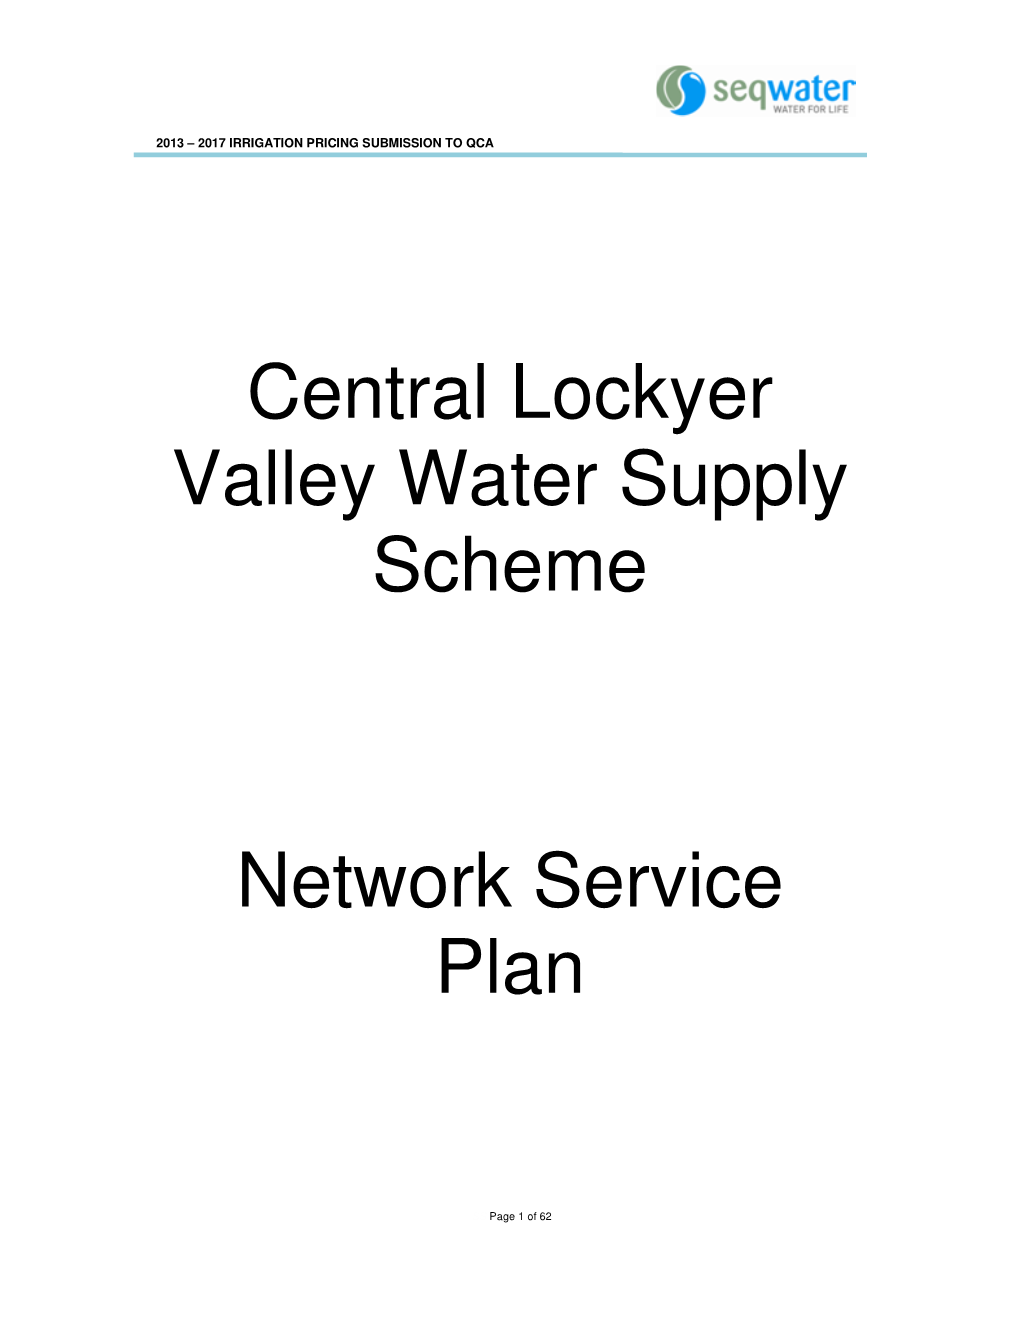 Central Lockyer Valley Water Supply Scheme Network Service Plan